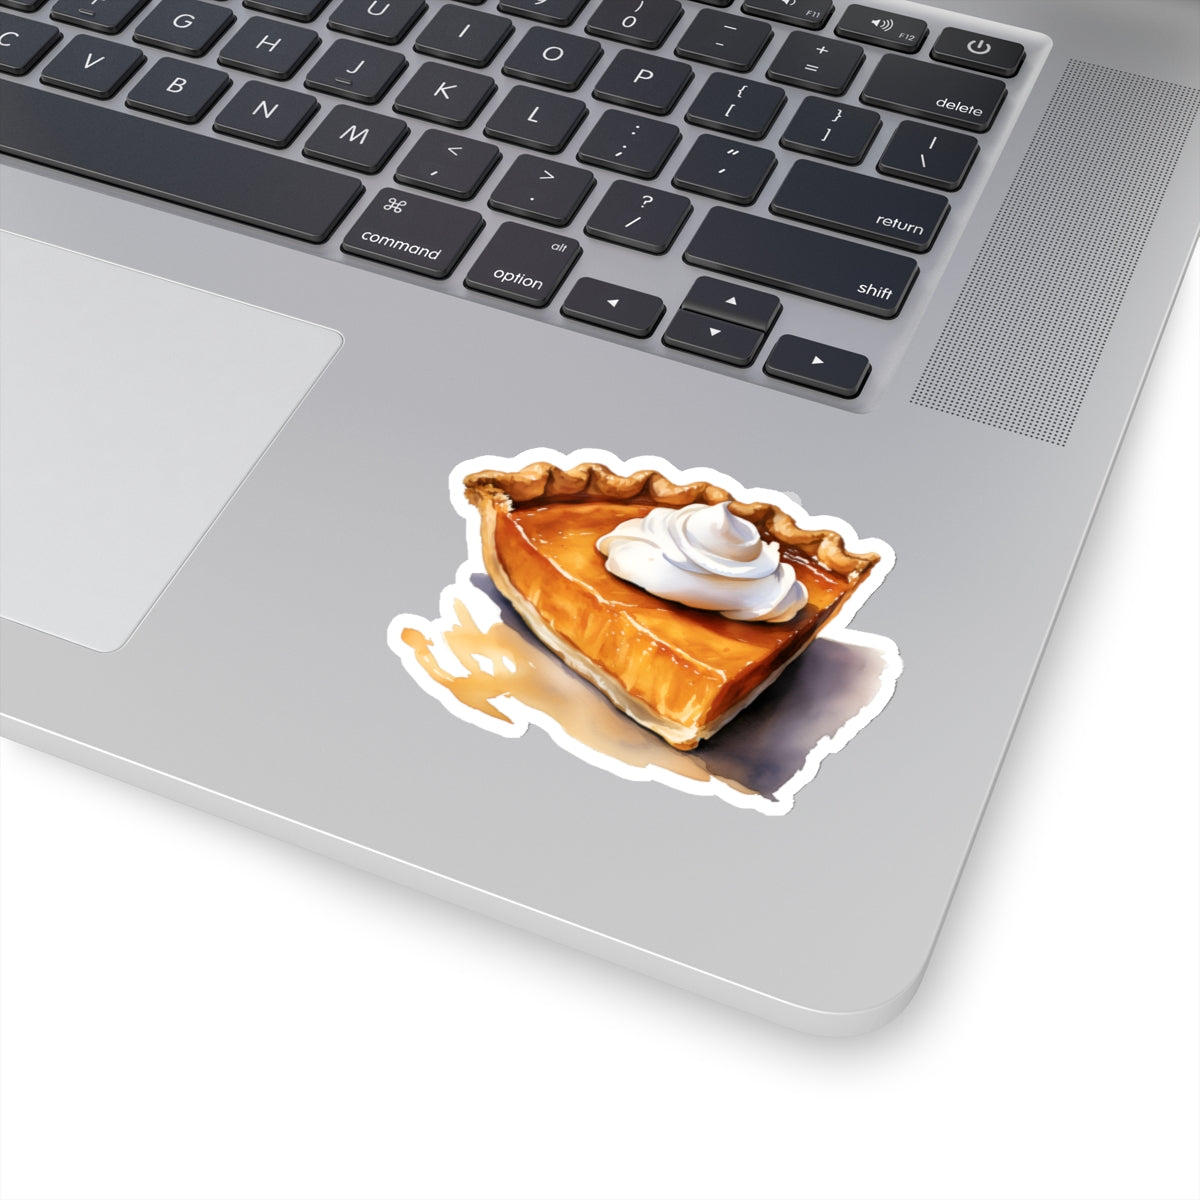 Pumpkin Pie Sticker